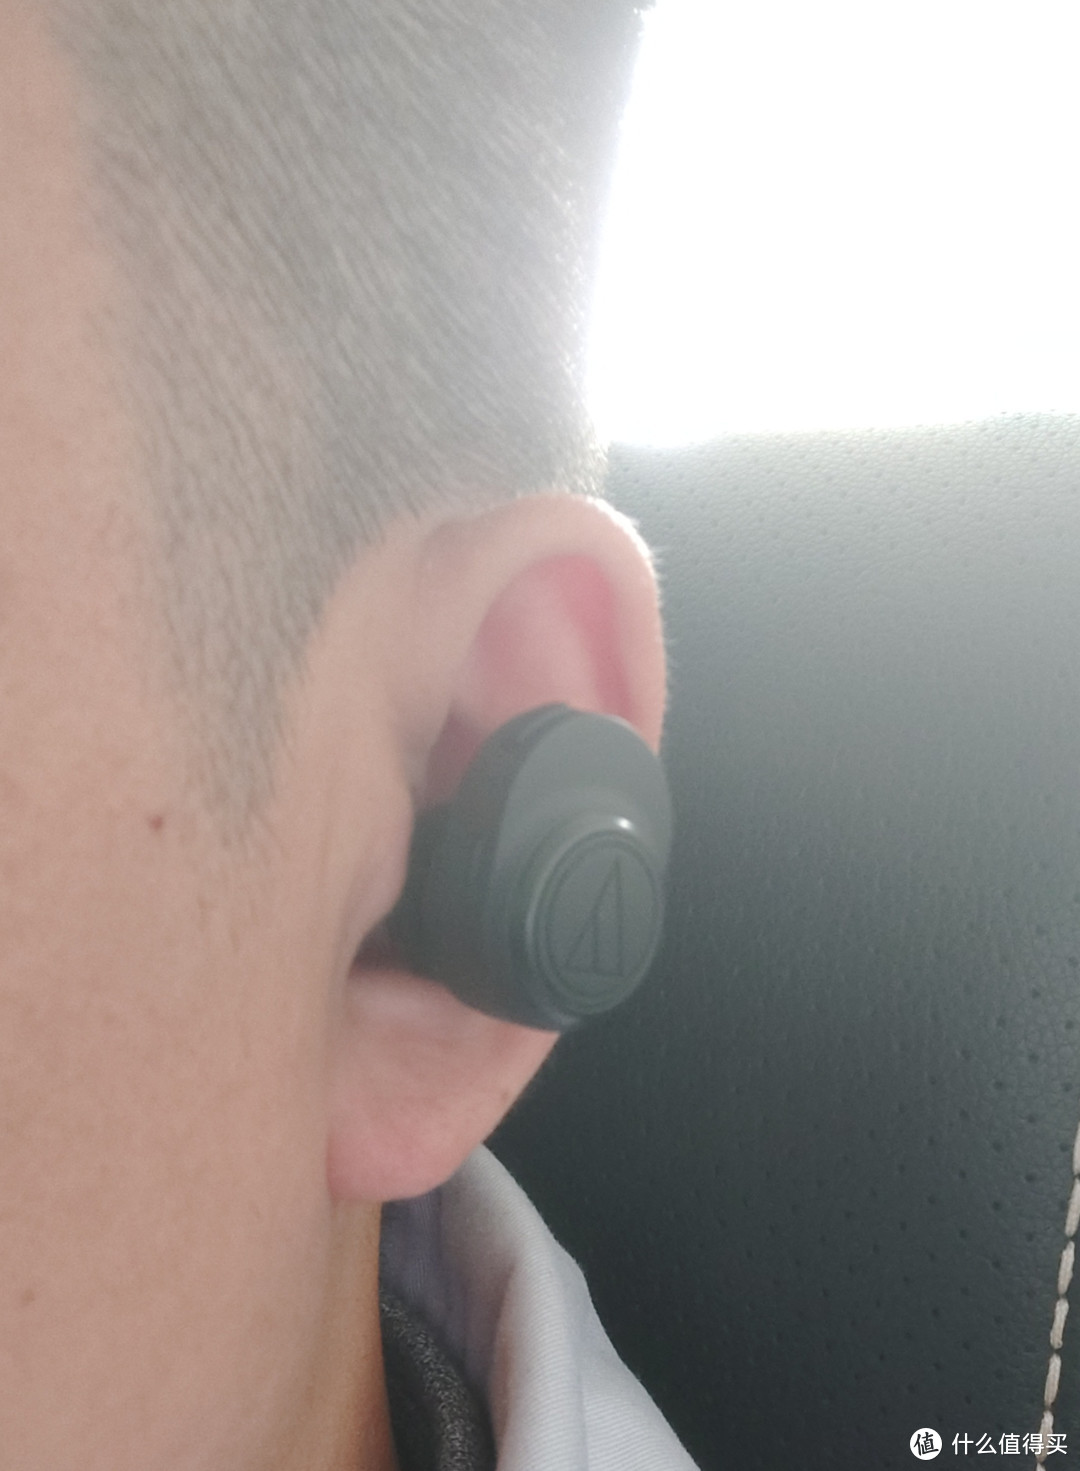 铁三角 ATH-CKR7TW 真无线入耳式hifi耳机 评测